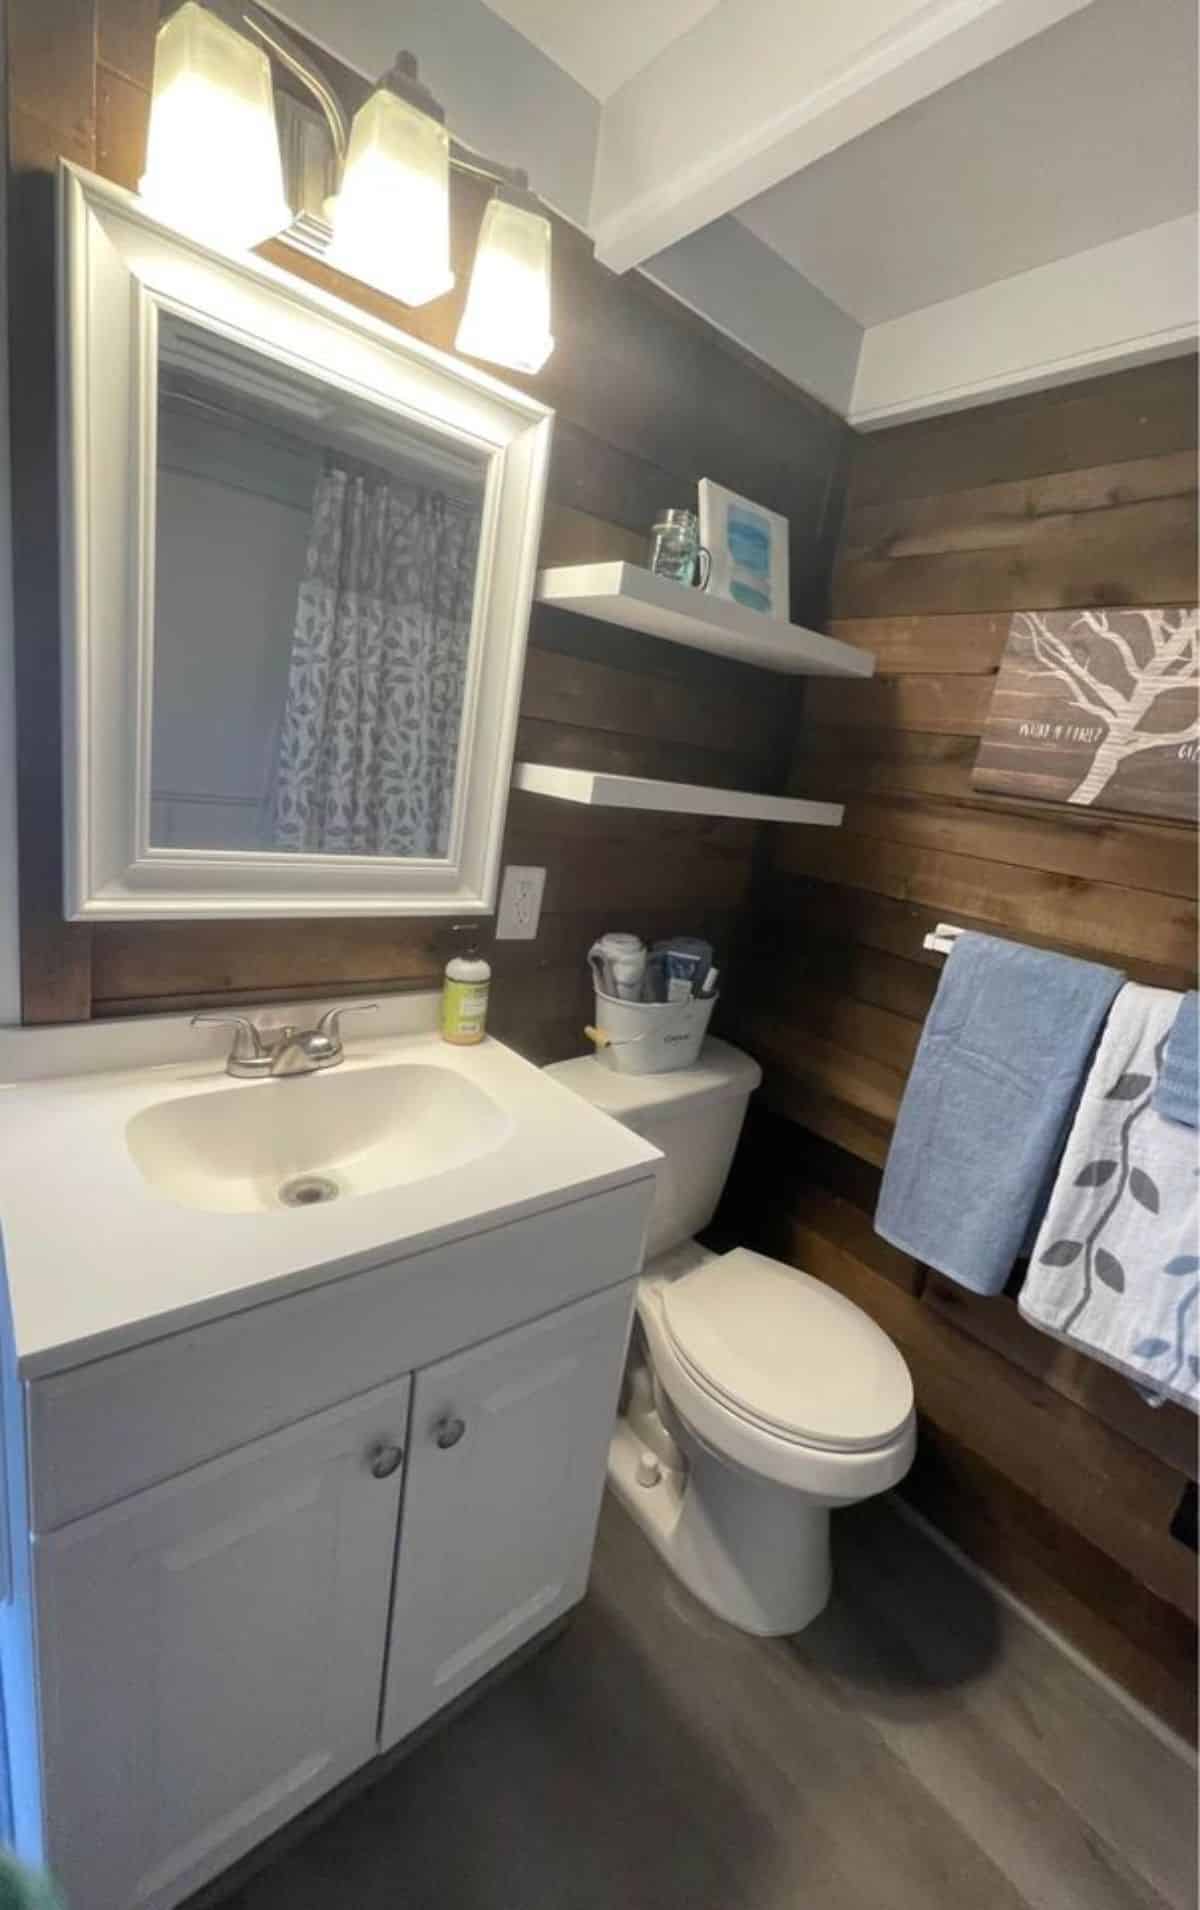 Standard toilet, sink with vanity & mirror